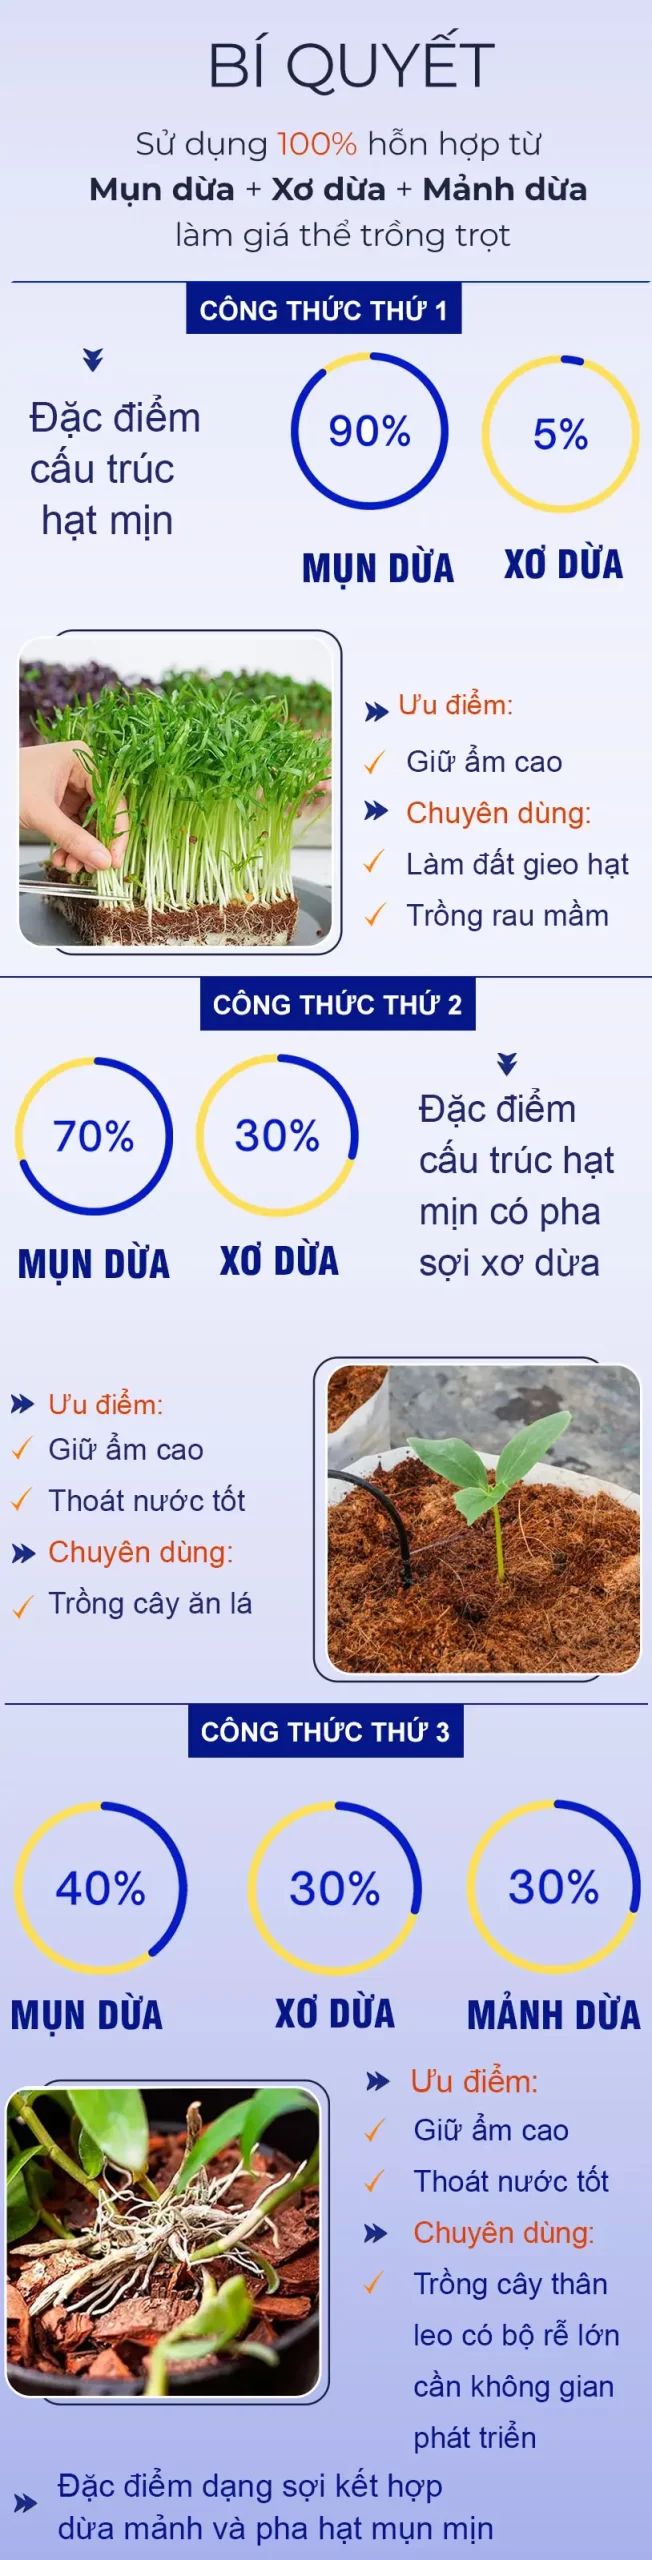 cong-thuc-tron-mun-dua-trong-cay_result222